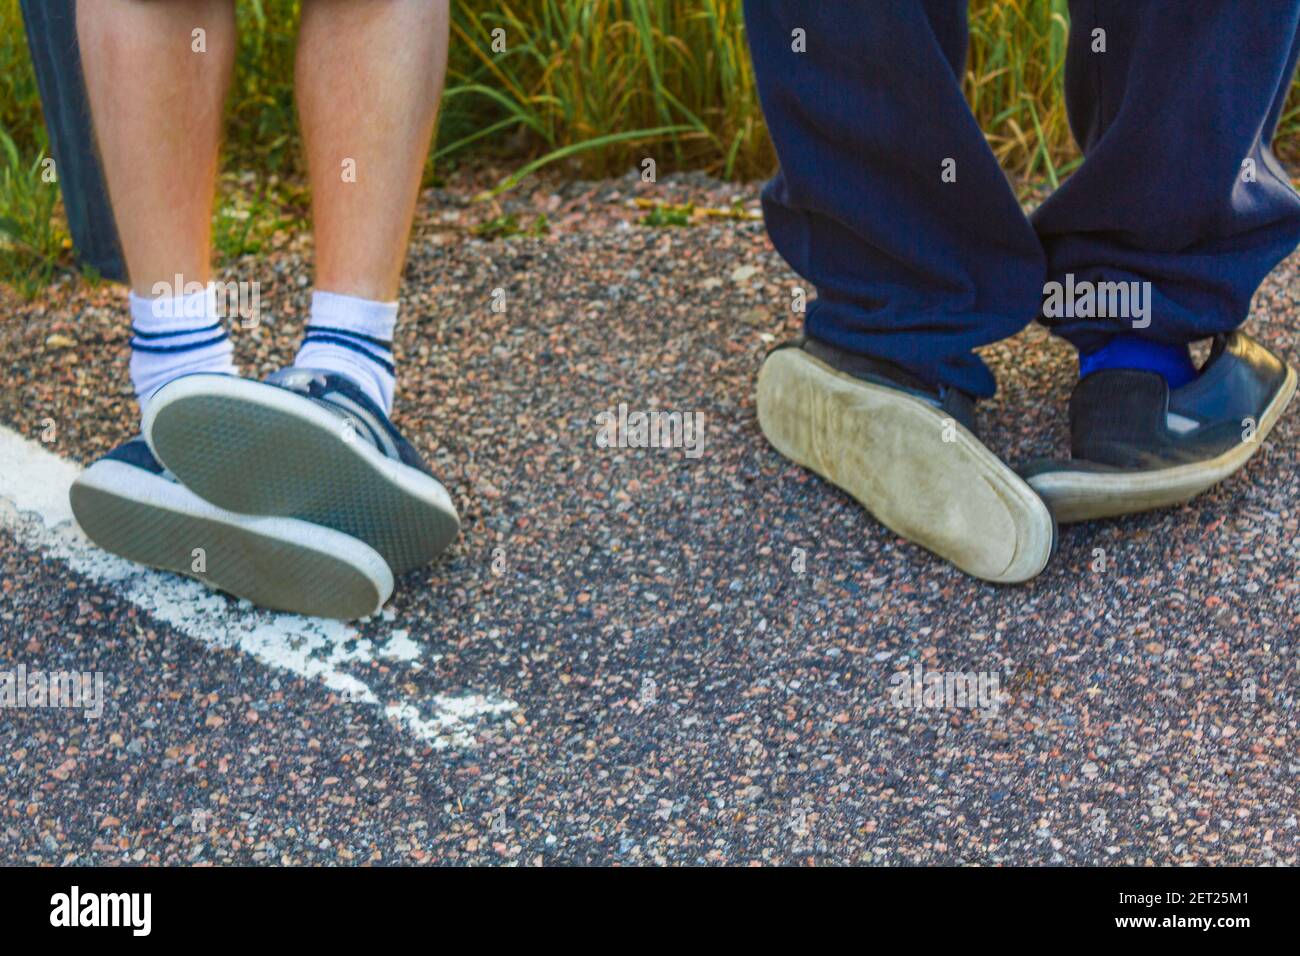 Falsch gekleidete Schuhe verrückte lustige Leute mit verrückten Schuhen  Stockfotografie - Alamy